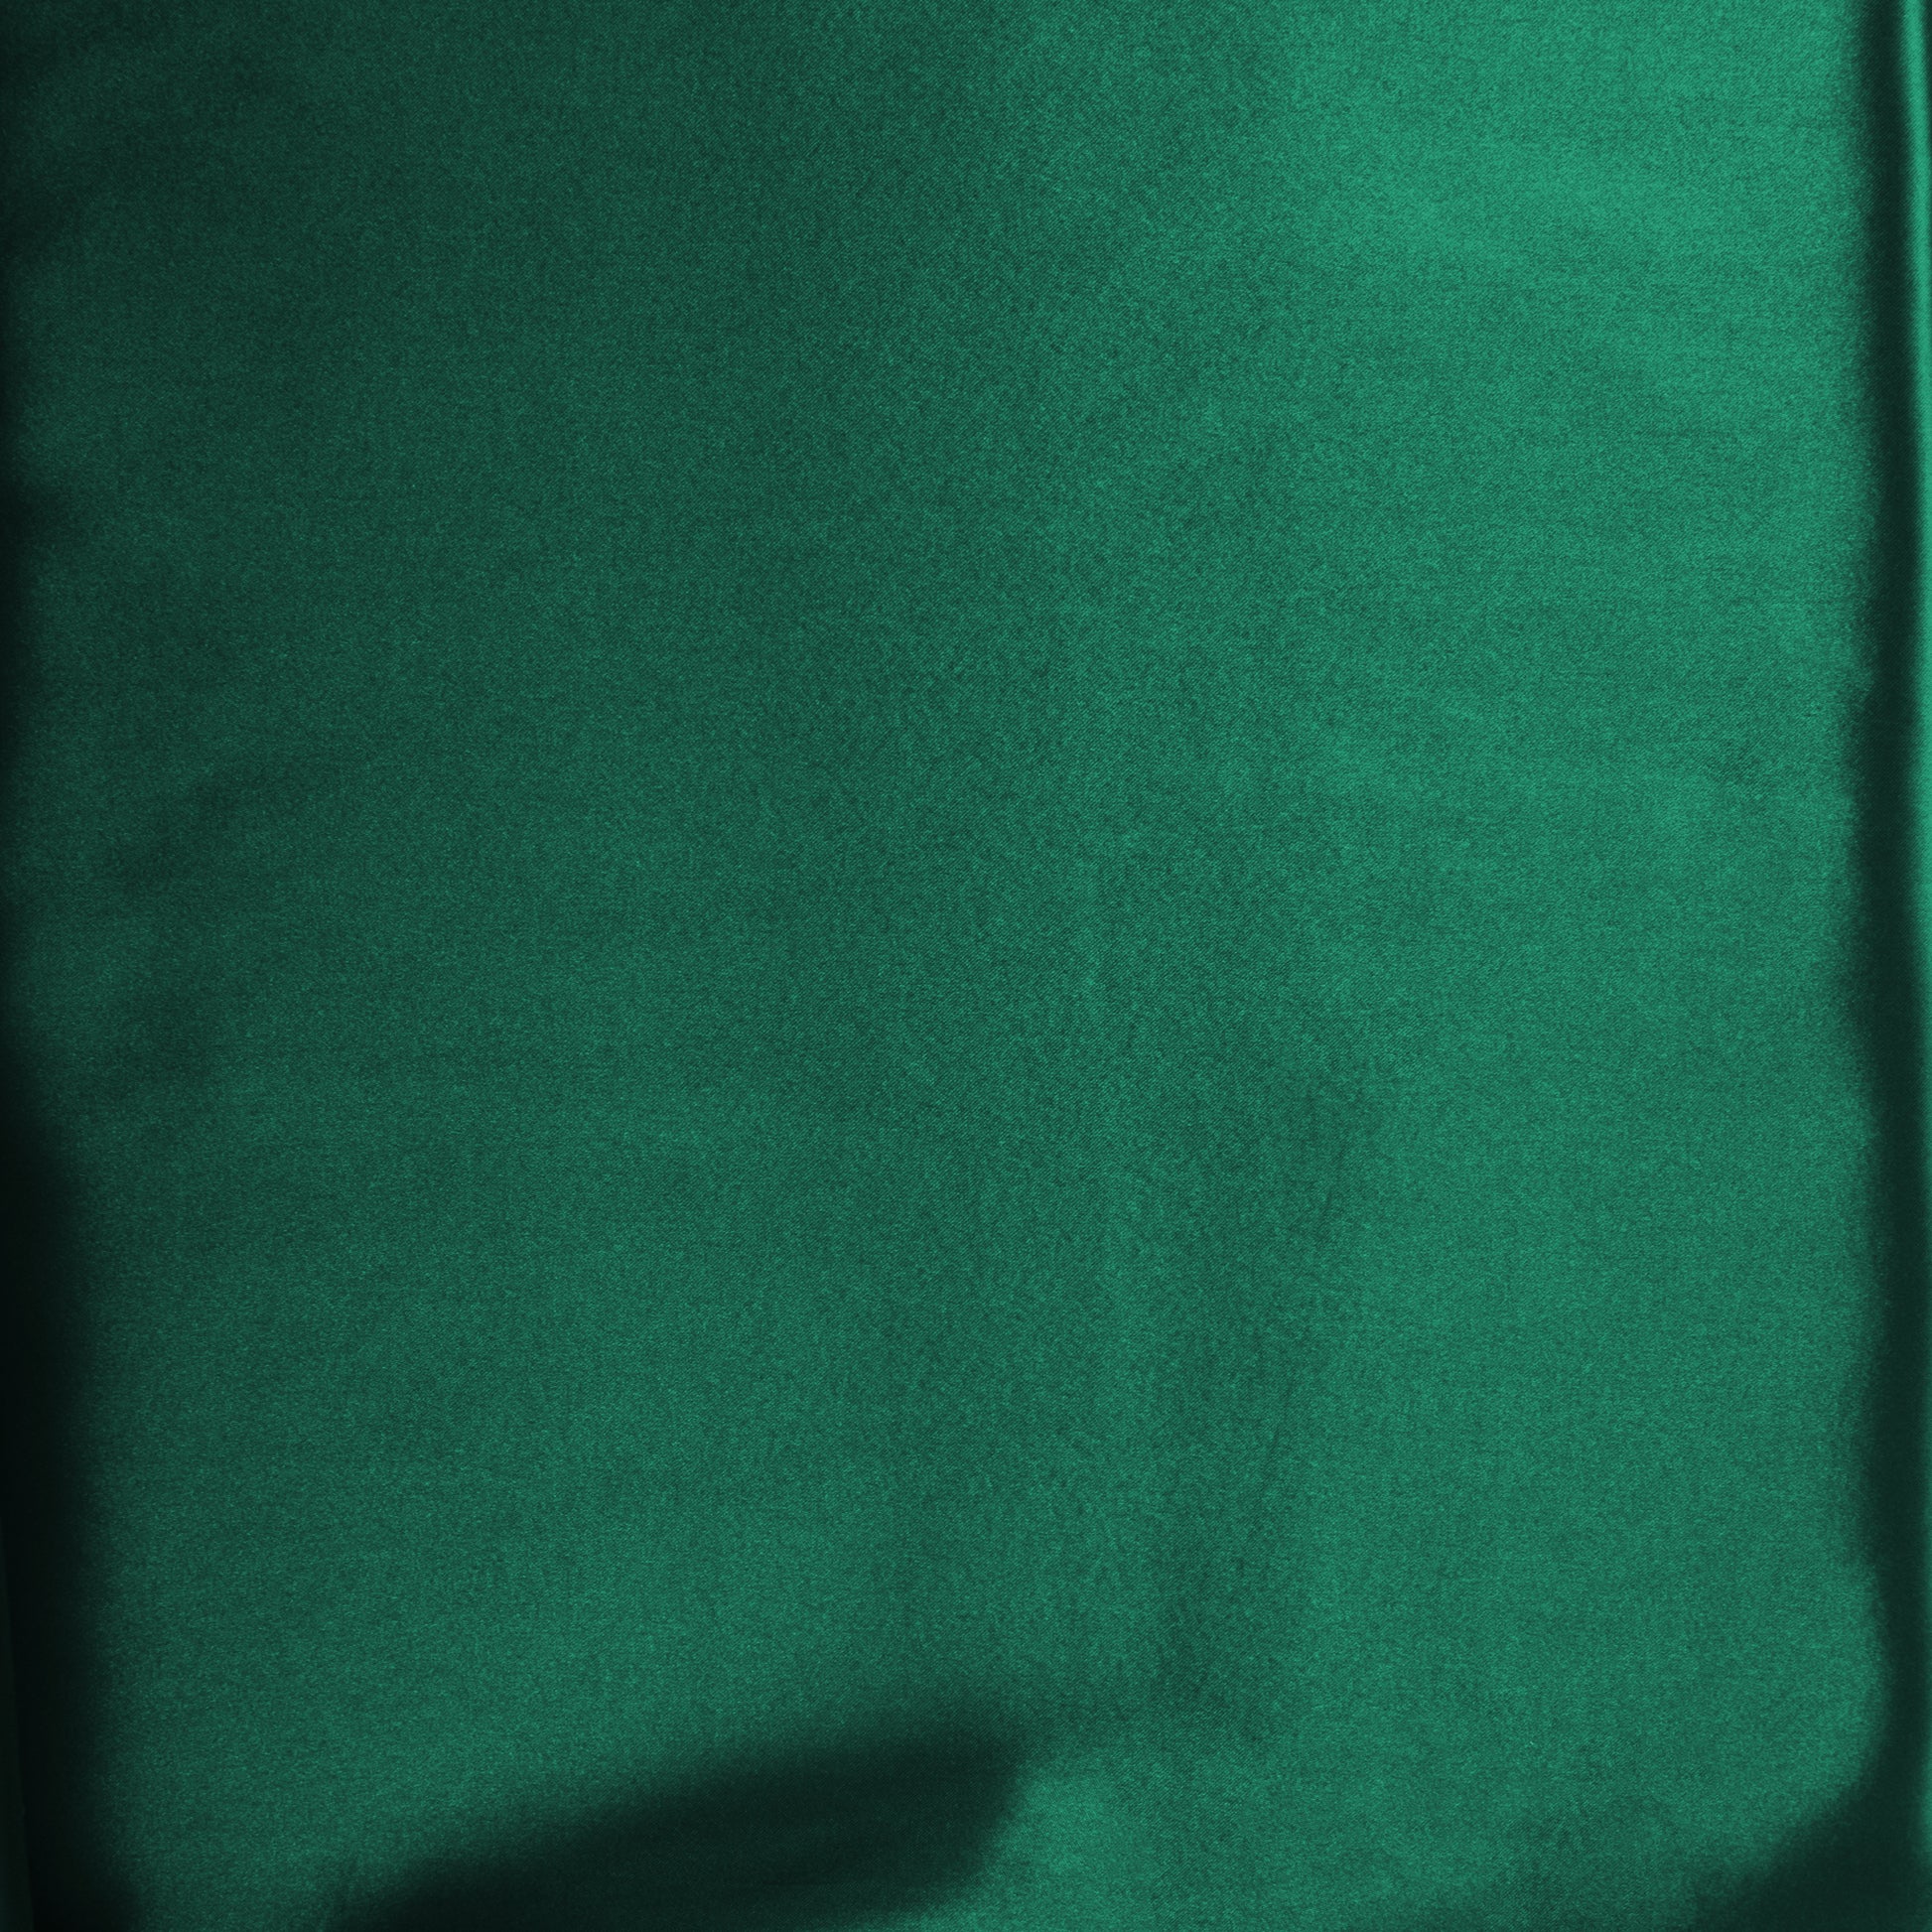 40 yds Satin Fabric Roll - Emerald Green - CV Linens